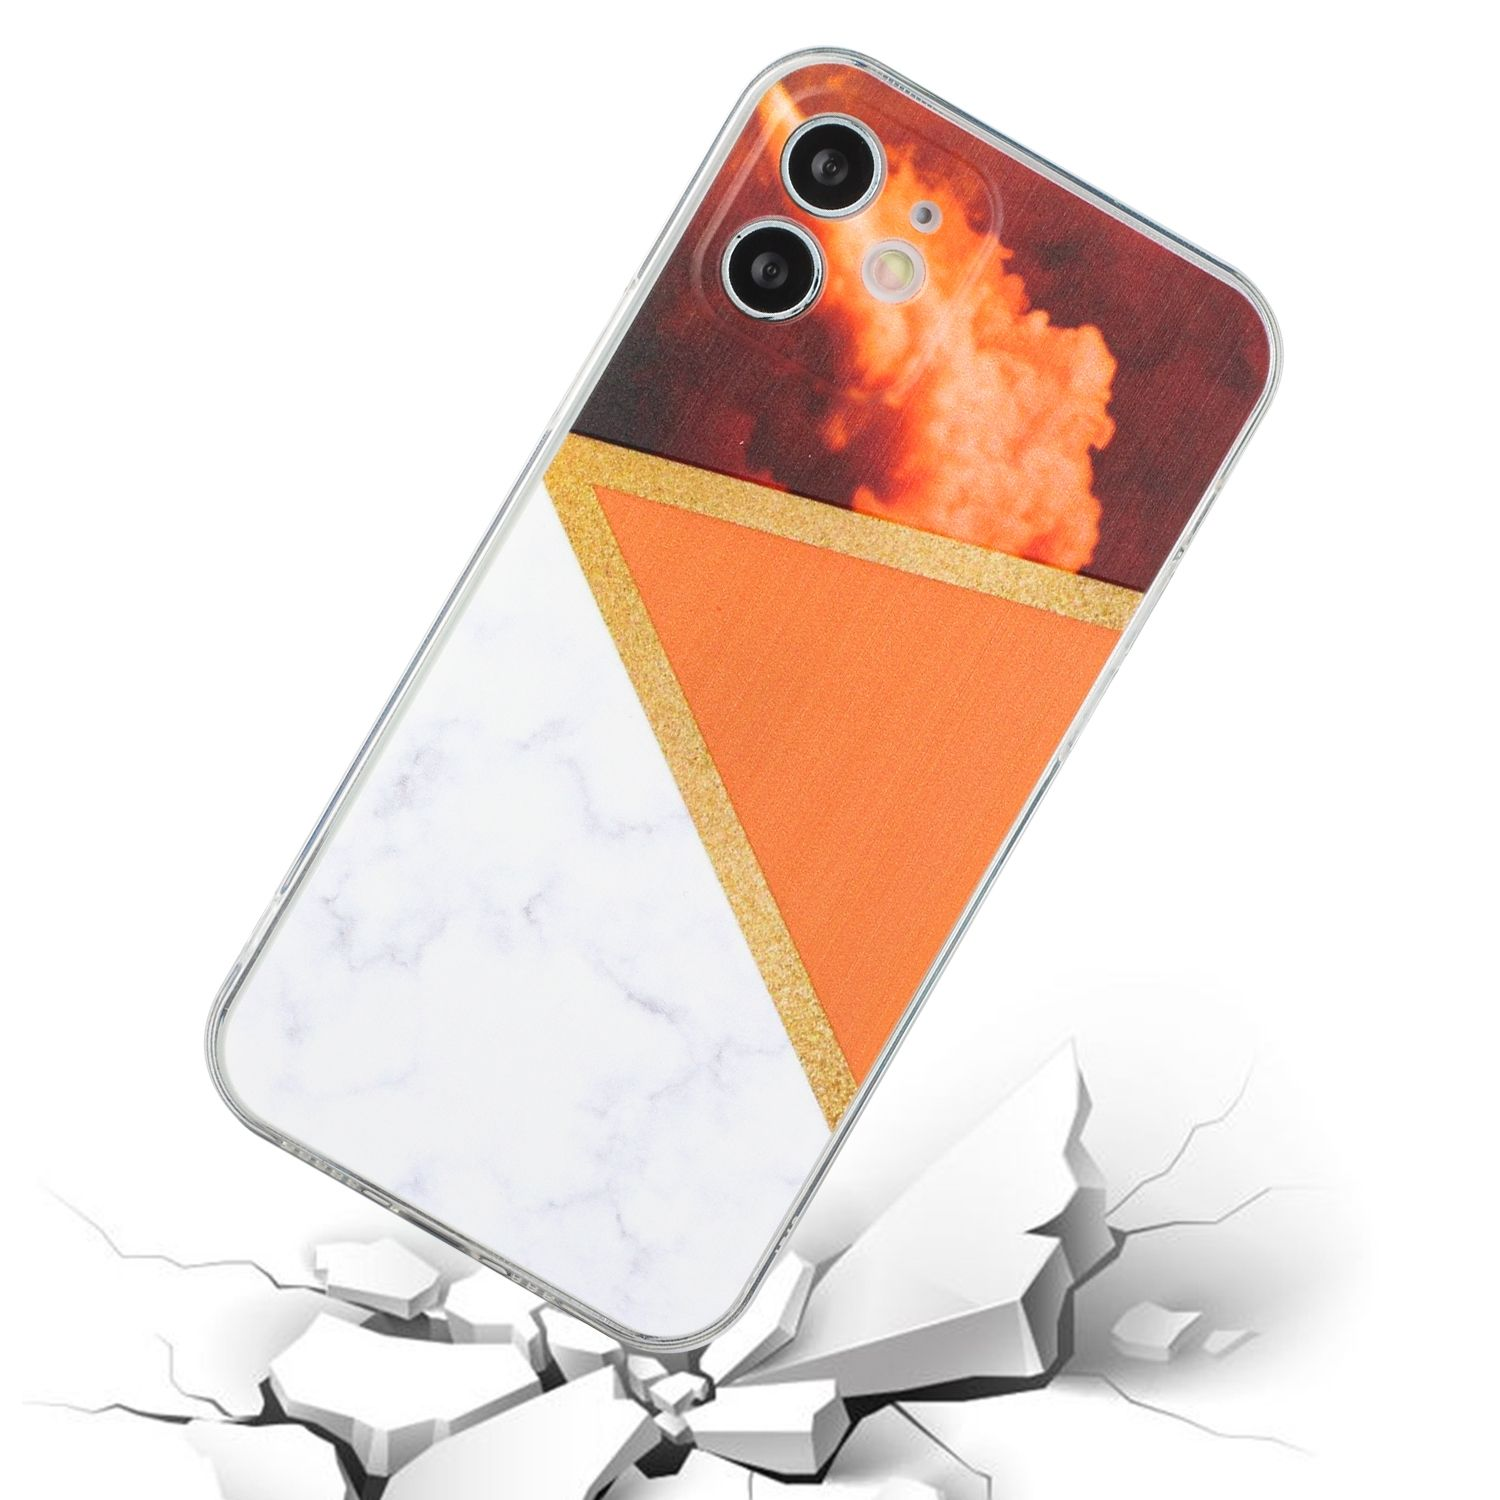 KÖNIG DESIGN Case, Orange 12, Apple, iPhone Backcover